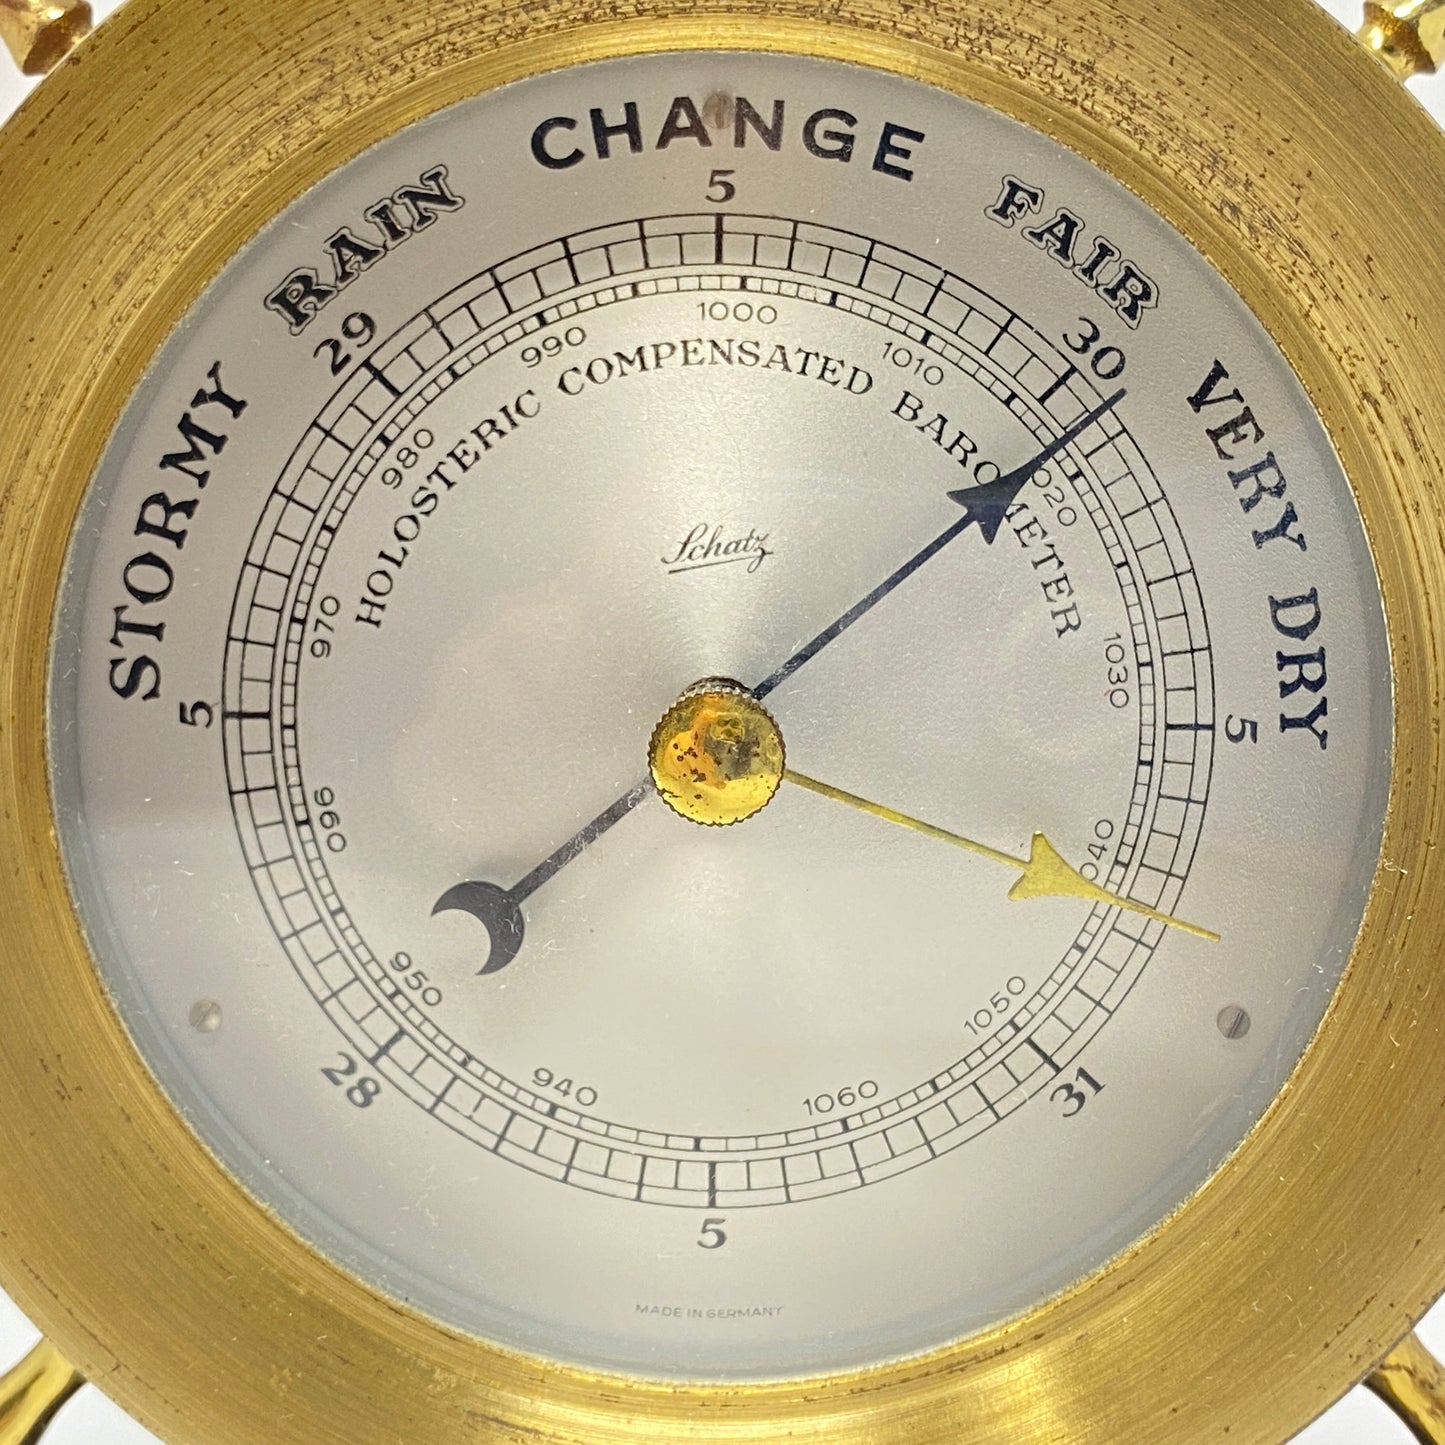 Schatz Brass Ships Wheel Aneroid Barometer on Stand